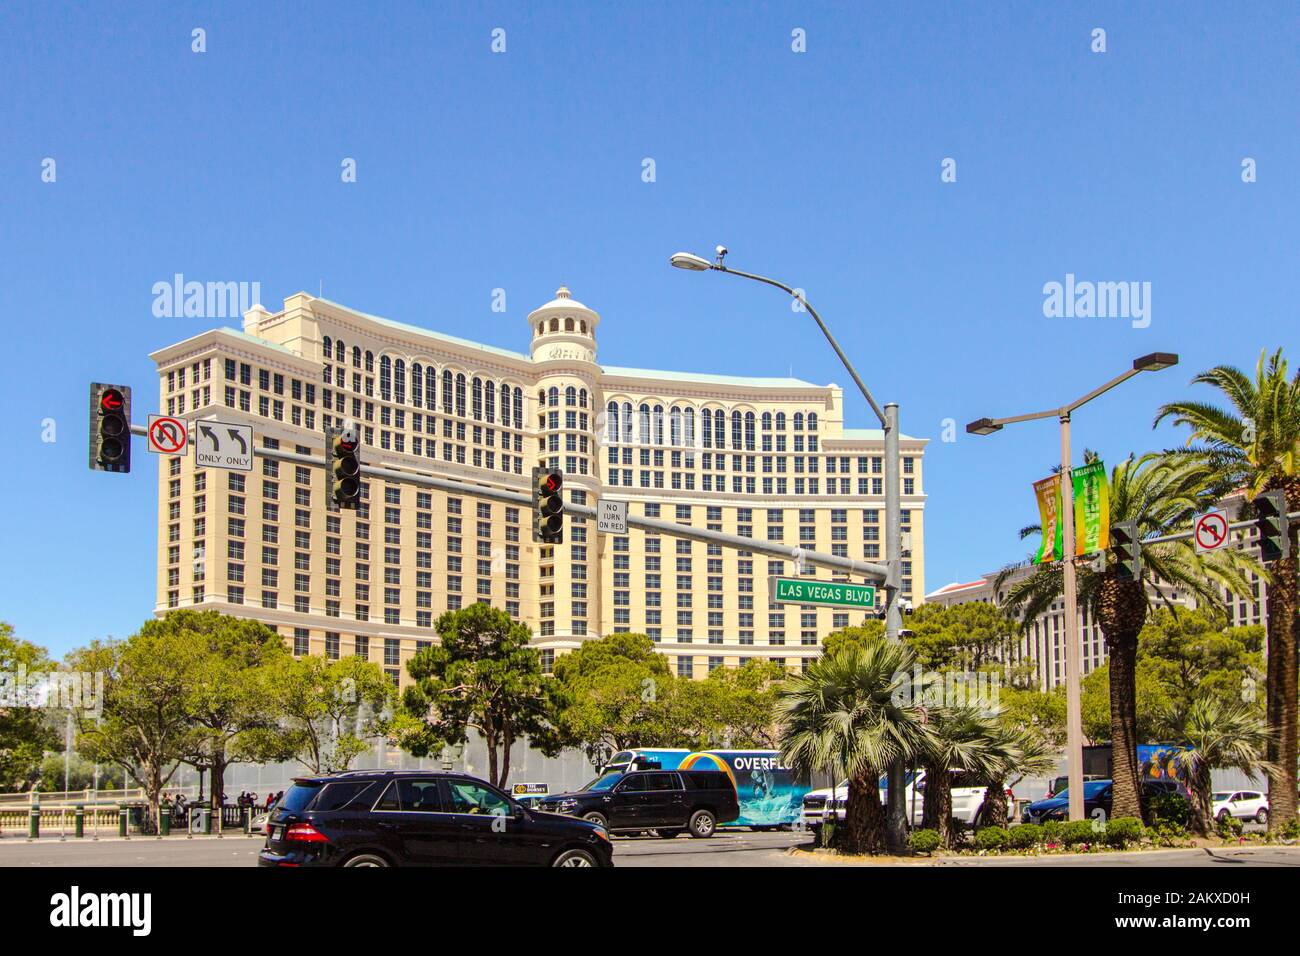 Las Vegas, Nevada, Stati Uniti d'America - 6 Maggio 2019: l'incrocio occupato di Las Vegas Boulevard e Flamingo Road con semaforo sulla Strip di Las Vegas. Foto Stock